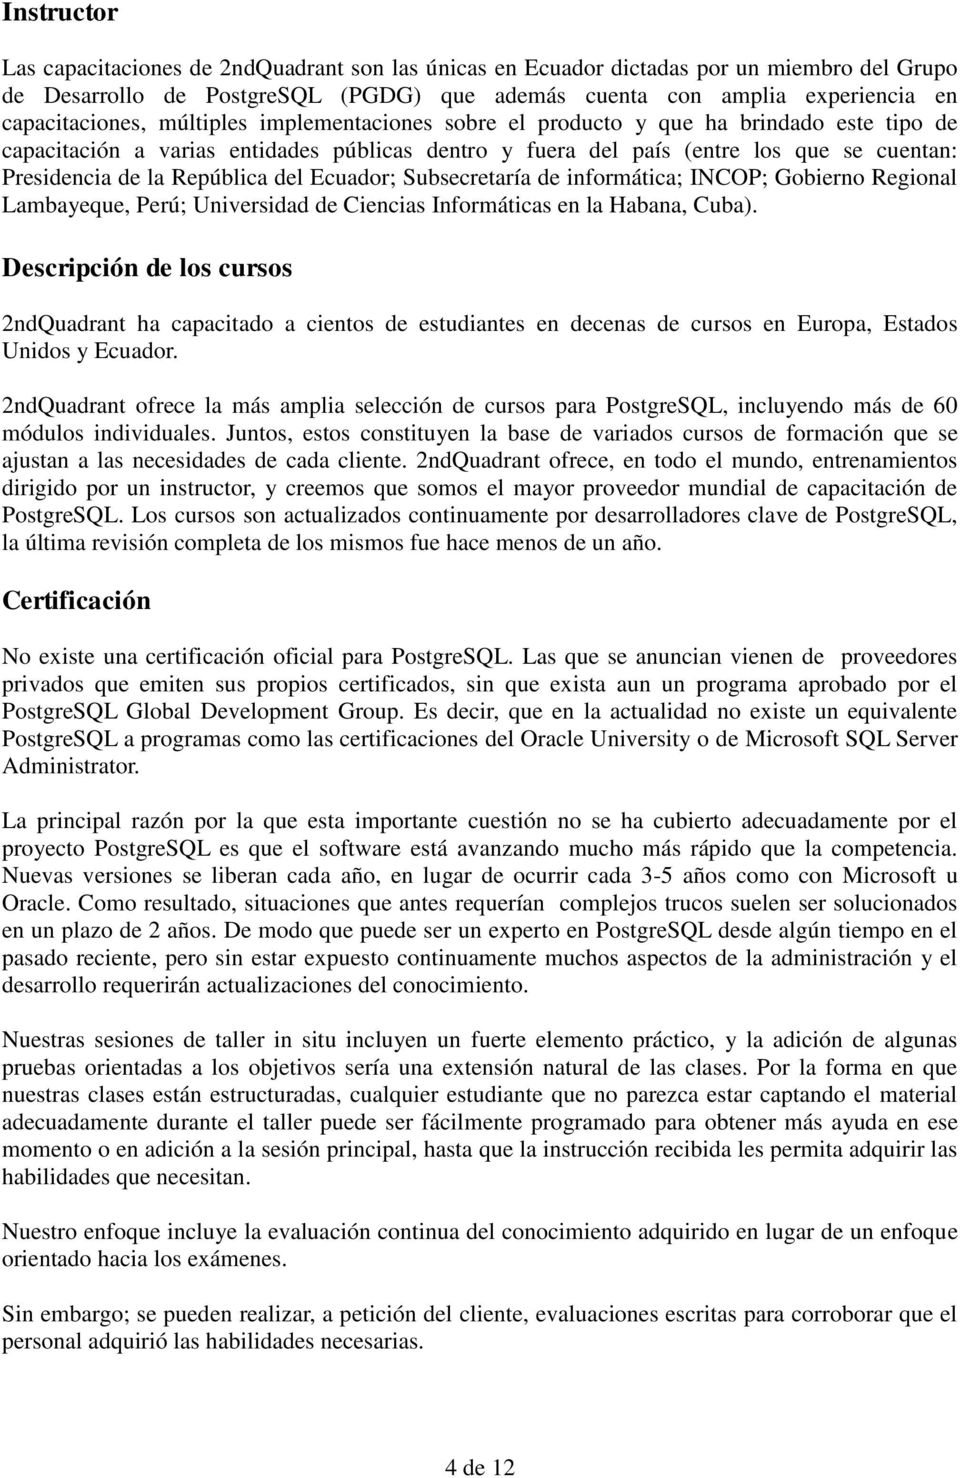 Ecuador; Subsecretaría de informática; INCOP; Gobierno Regional Lambayeque, Perú; Universidad de Ciencias Informáticas en la Habana, Cuba).